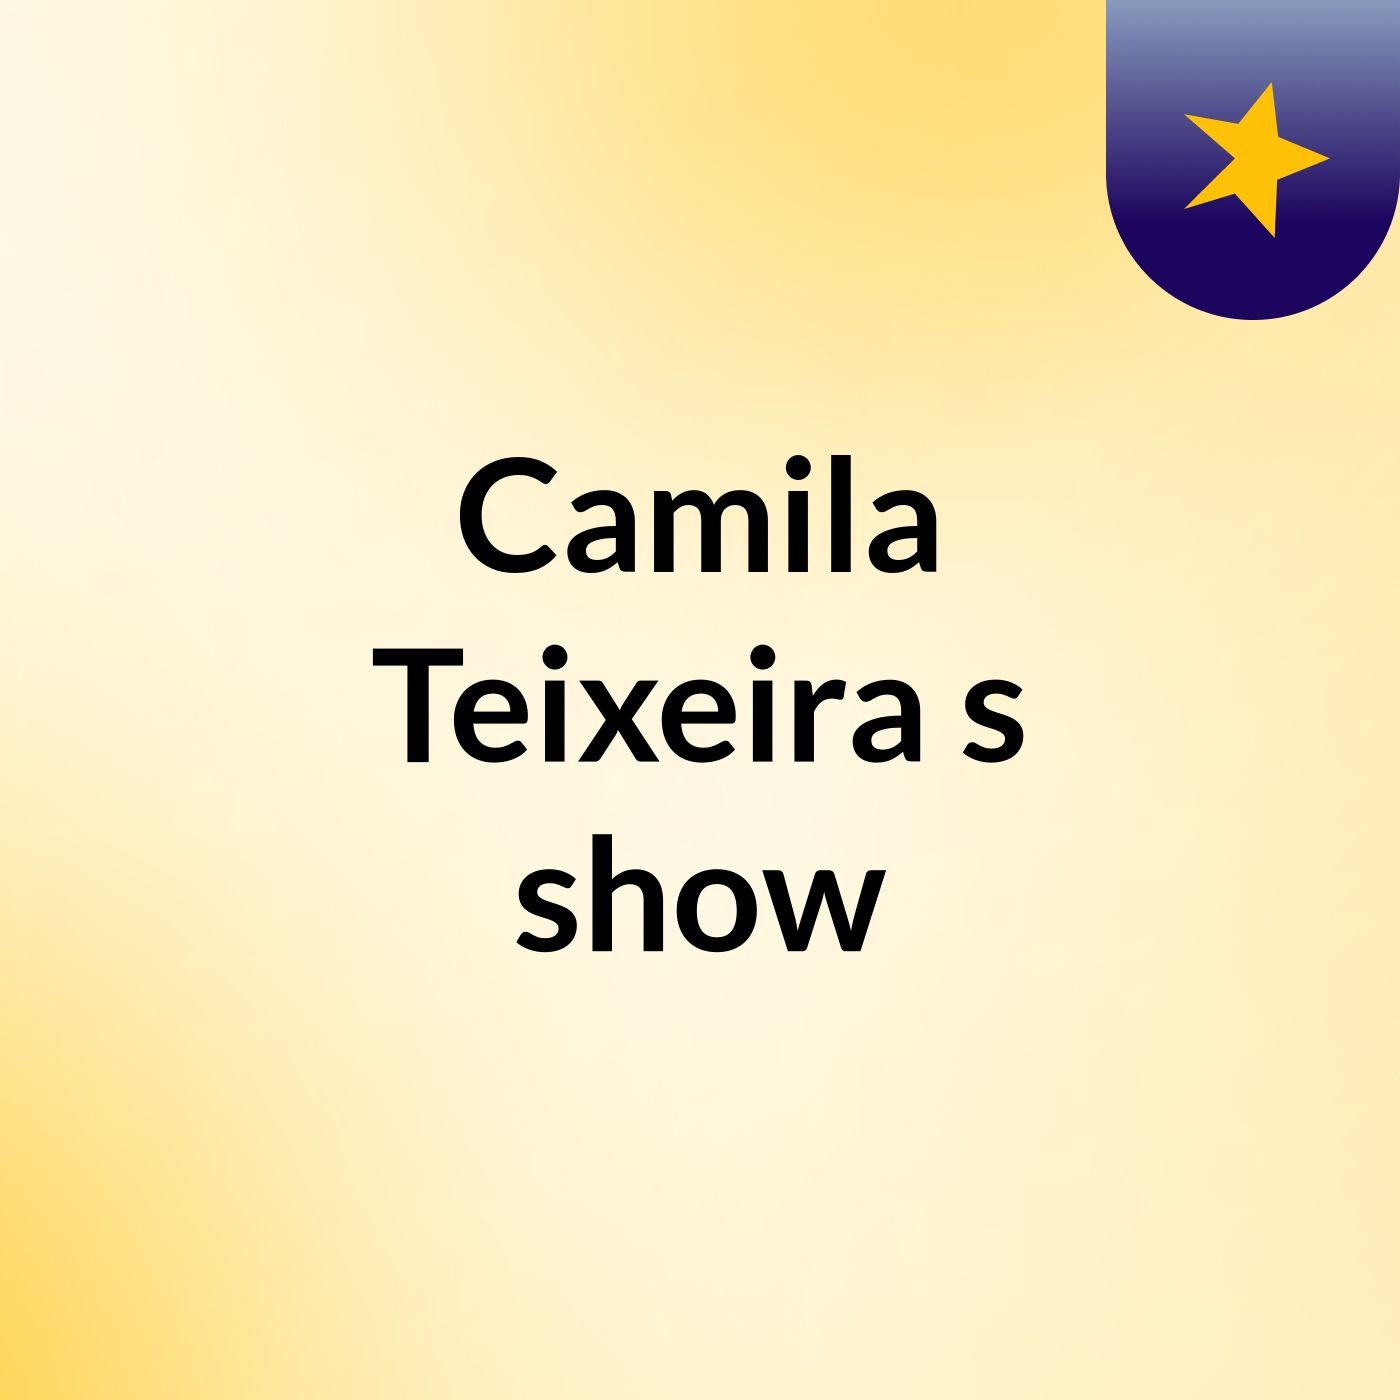 Camila Teixeira's show